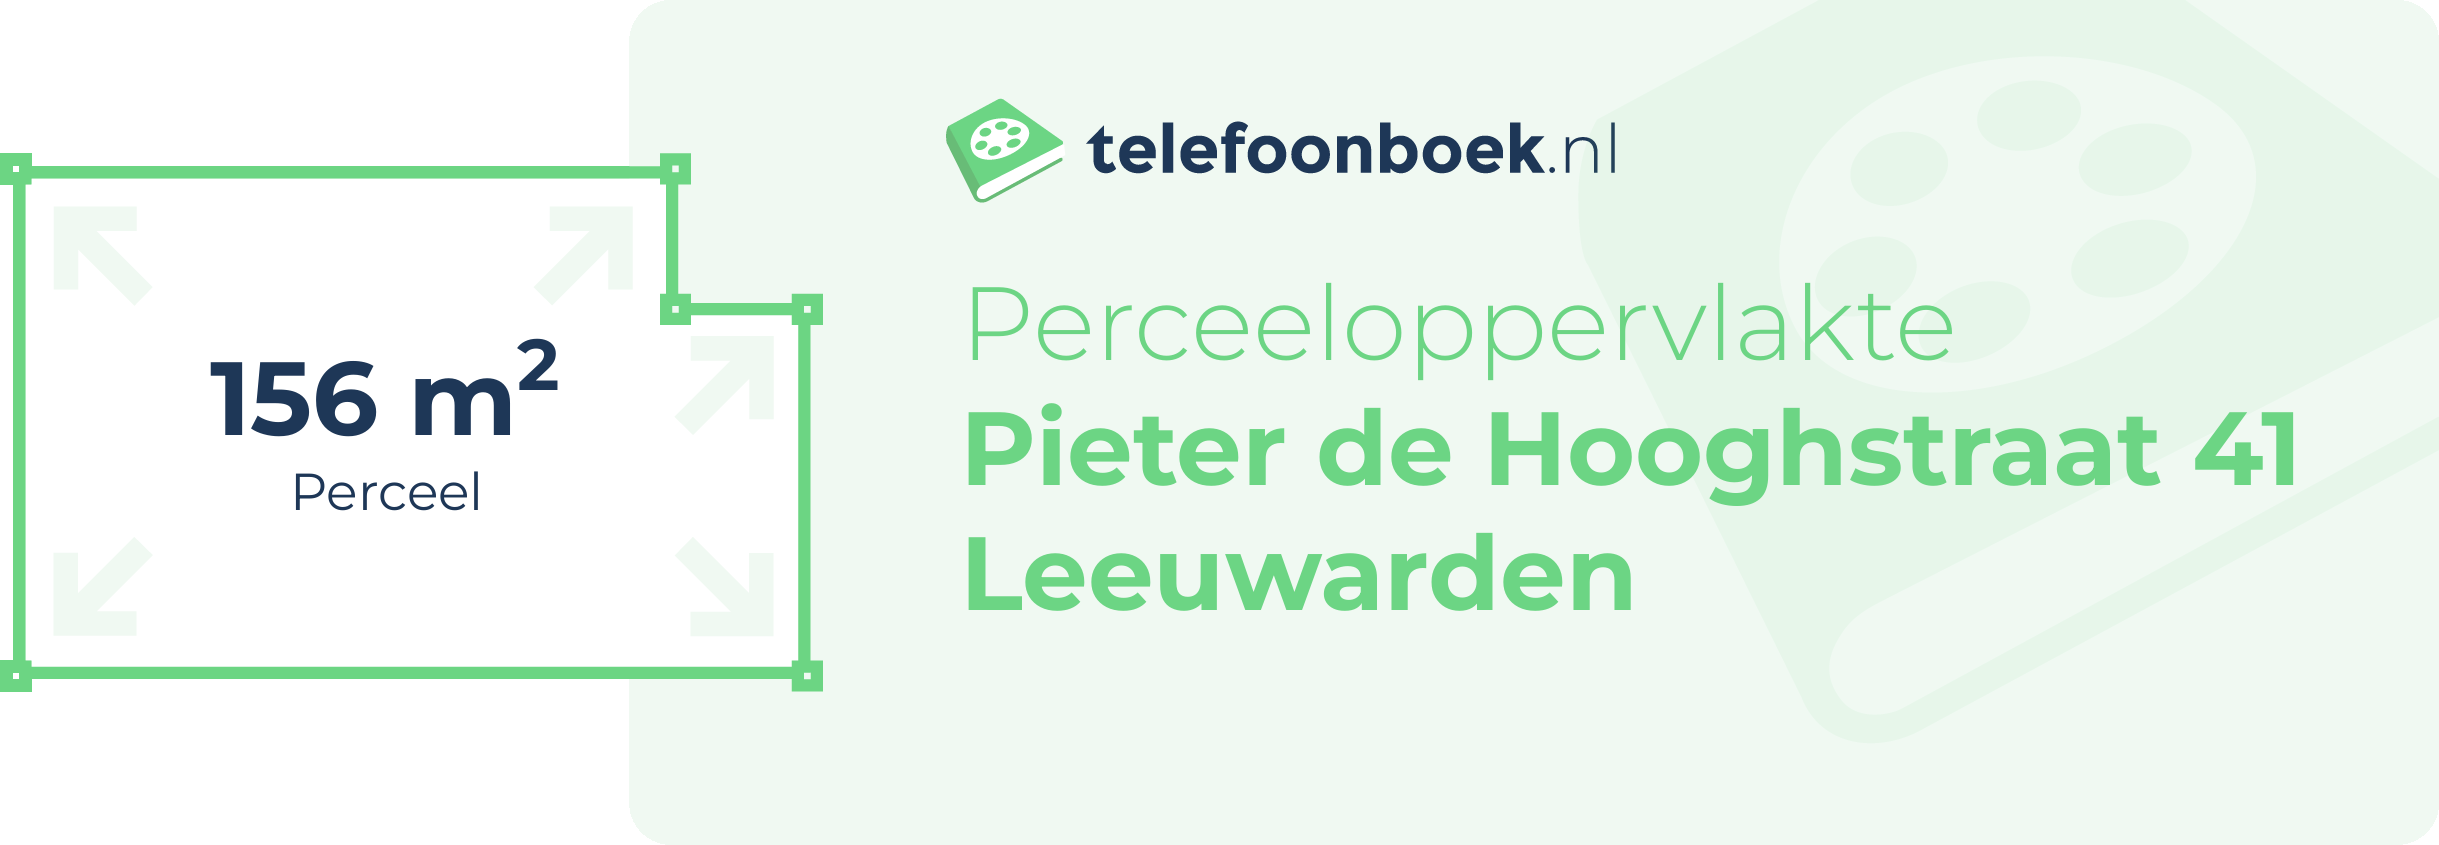 Perceeloppervlakte Pieter De Hooghstraat 41 Leeuwarden